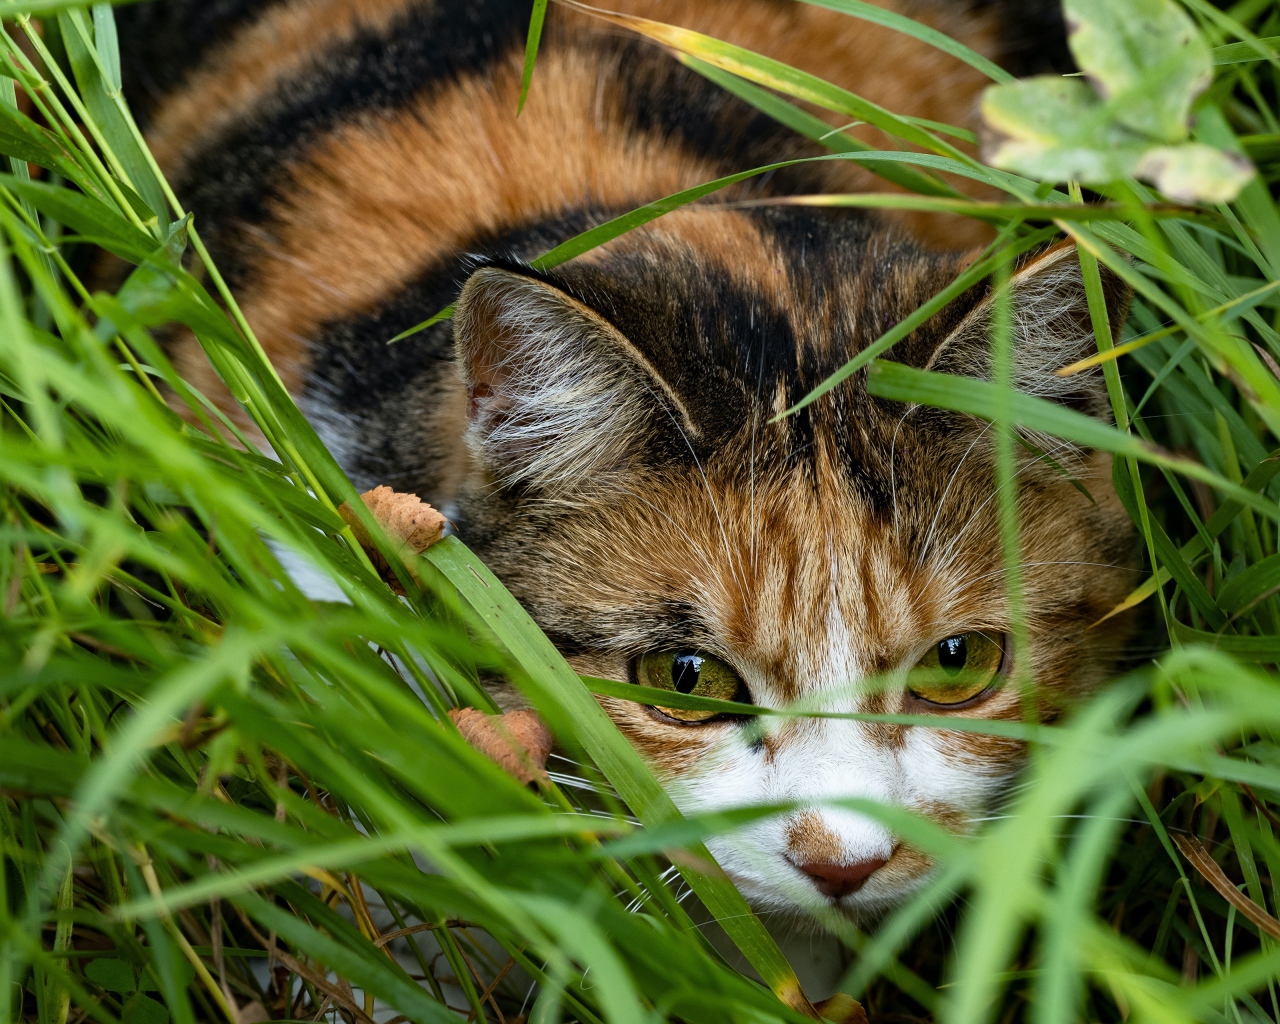 Трехцветная кошка прячется в зеленой траве